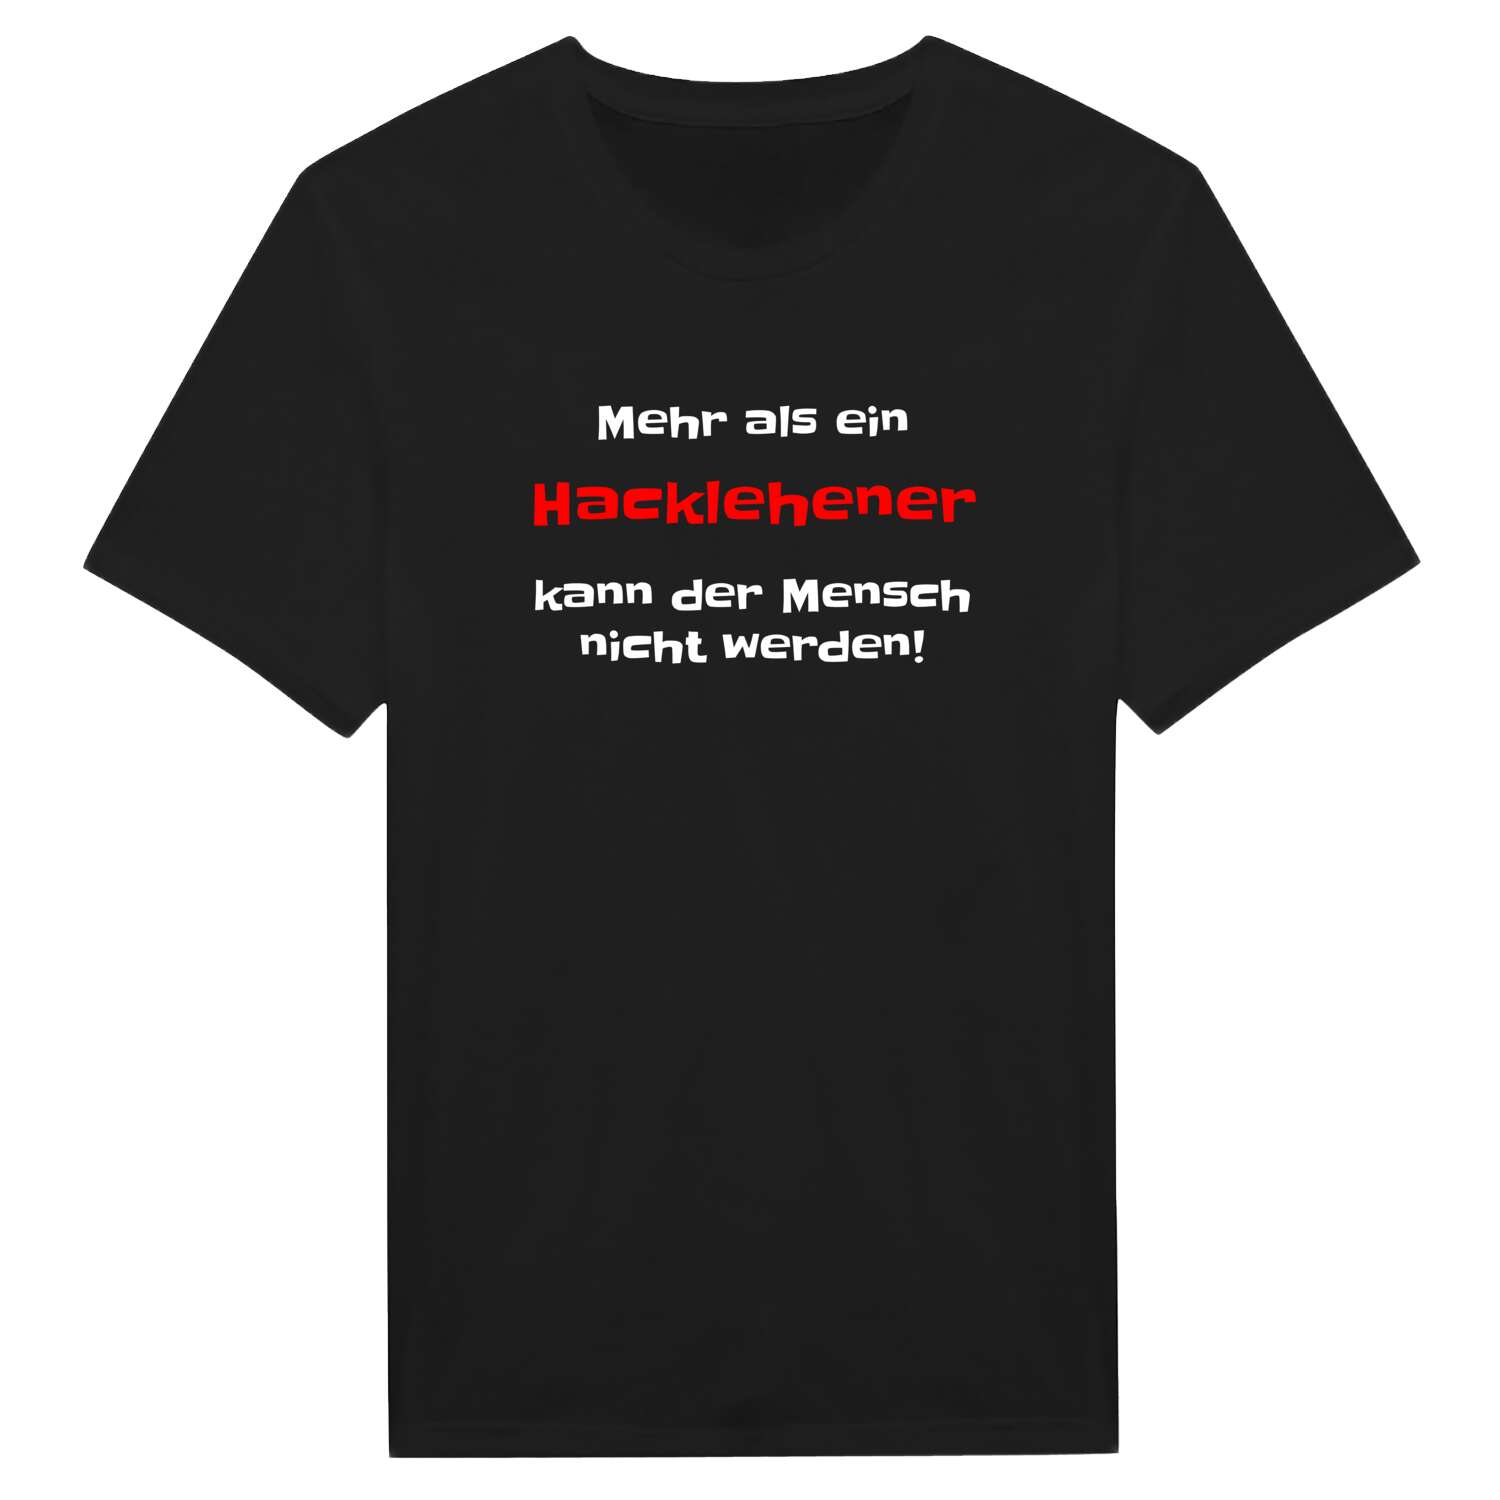 Hacklehen T-Shirt »Mehr als ein«